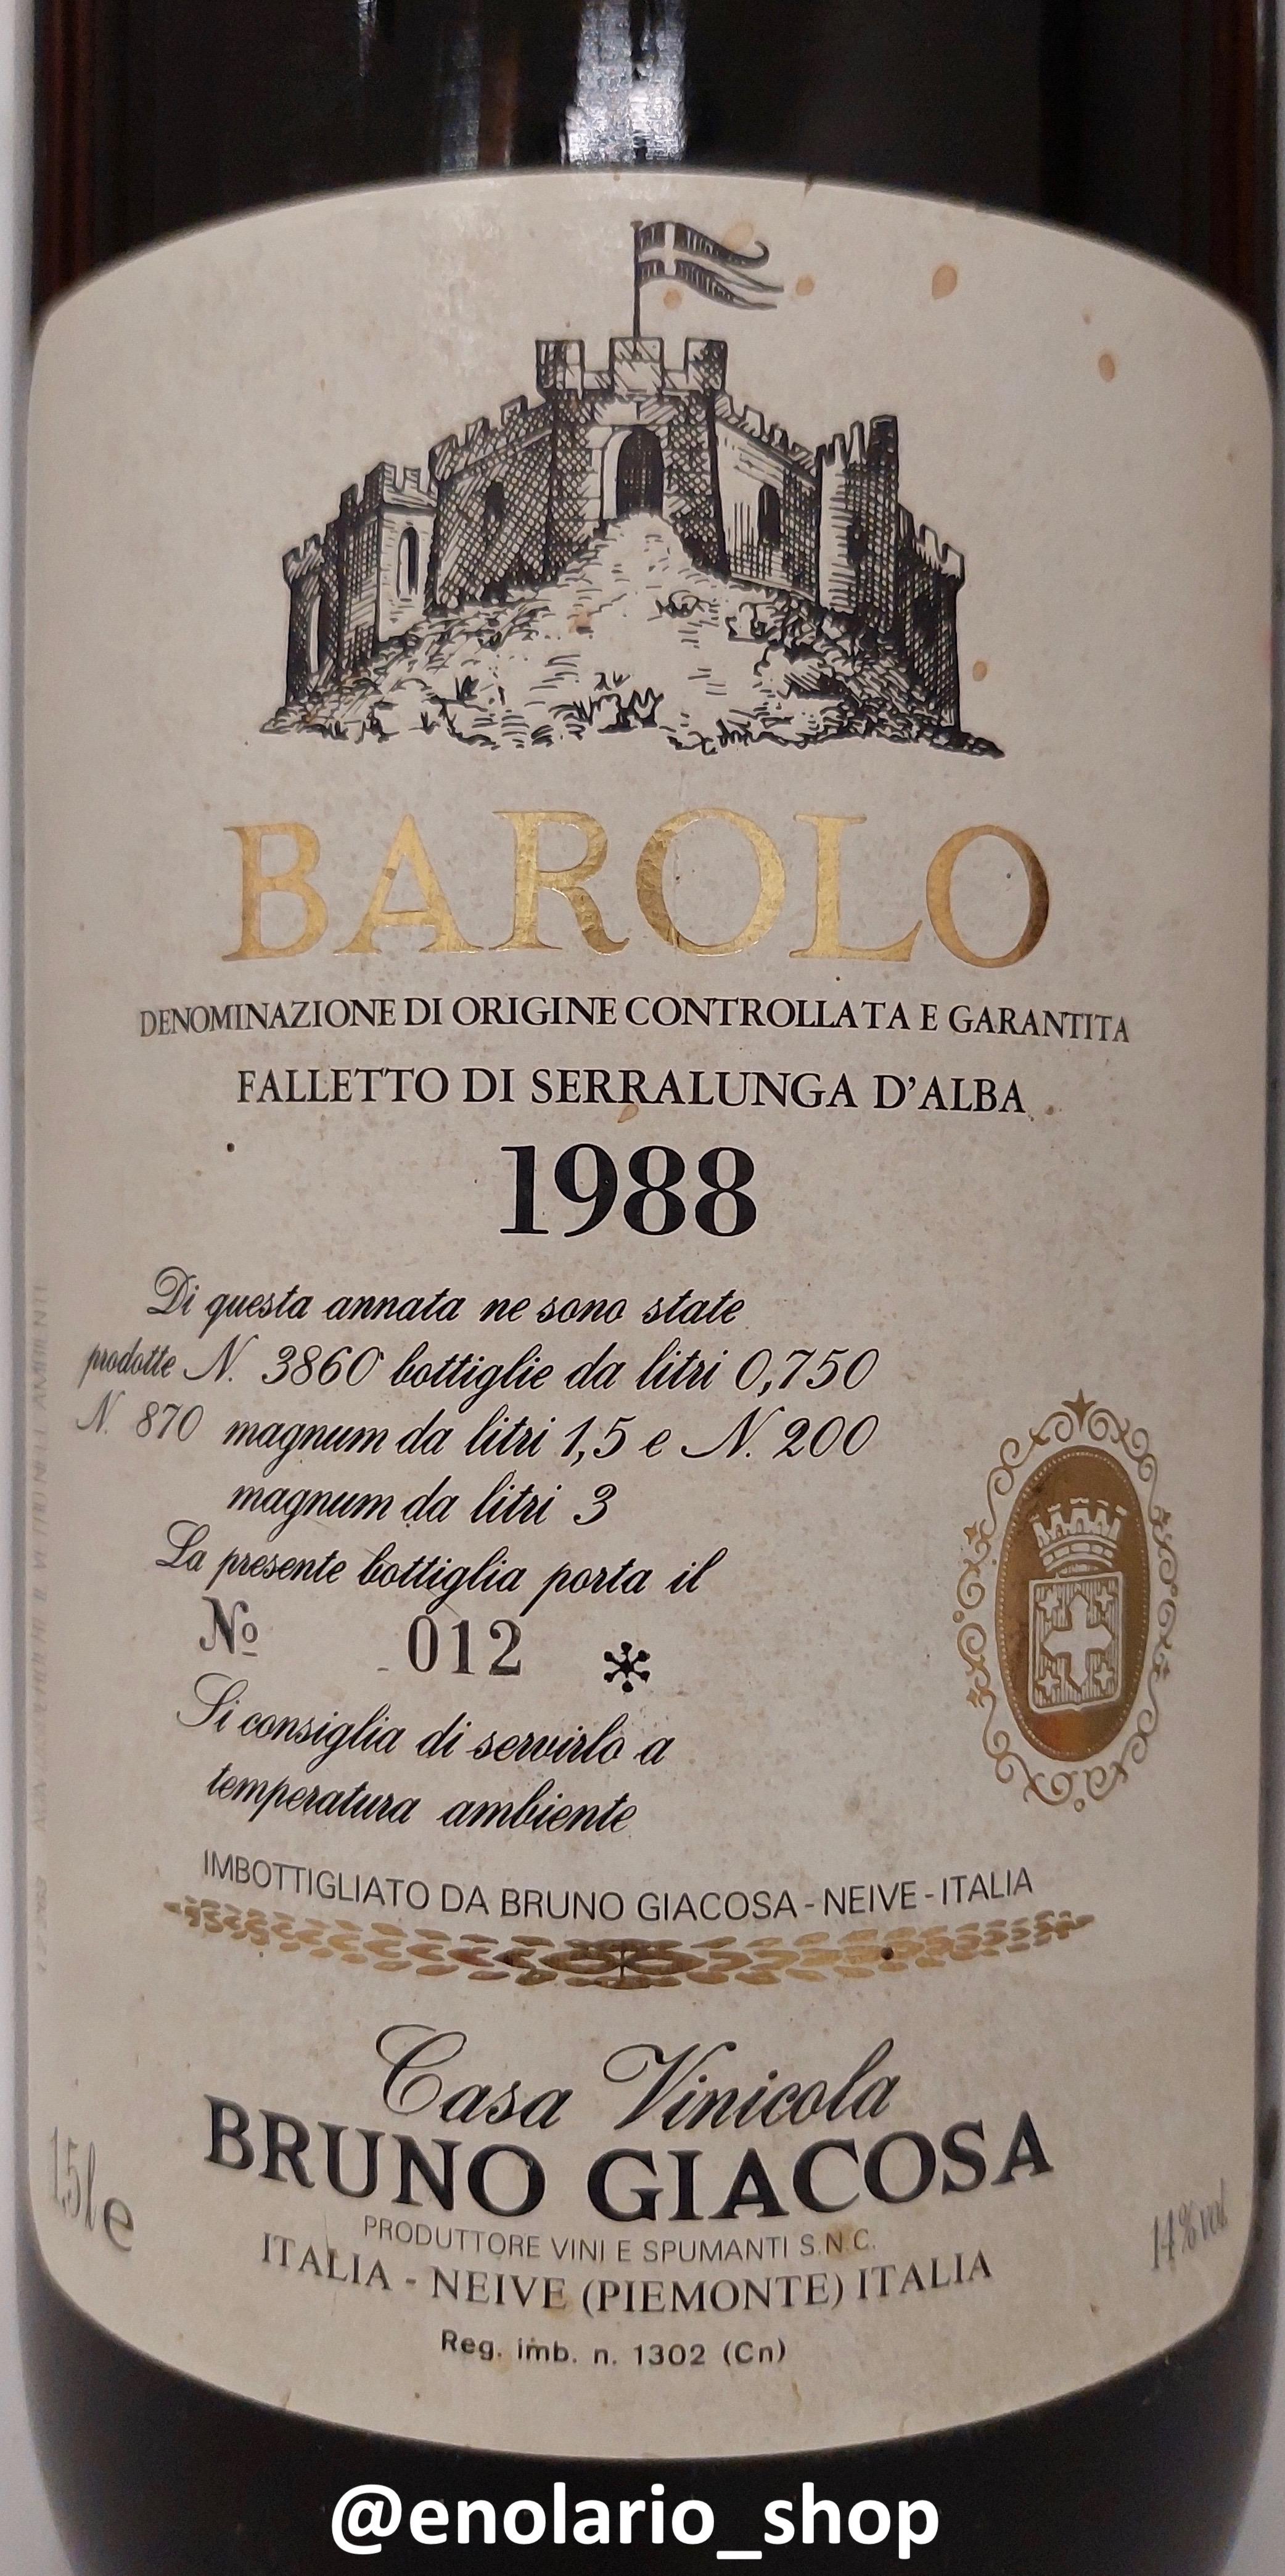 Bruno Giacosa Barolo Falletto 1988